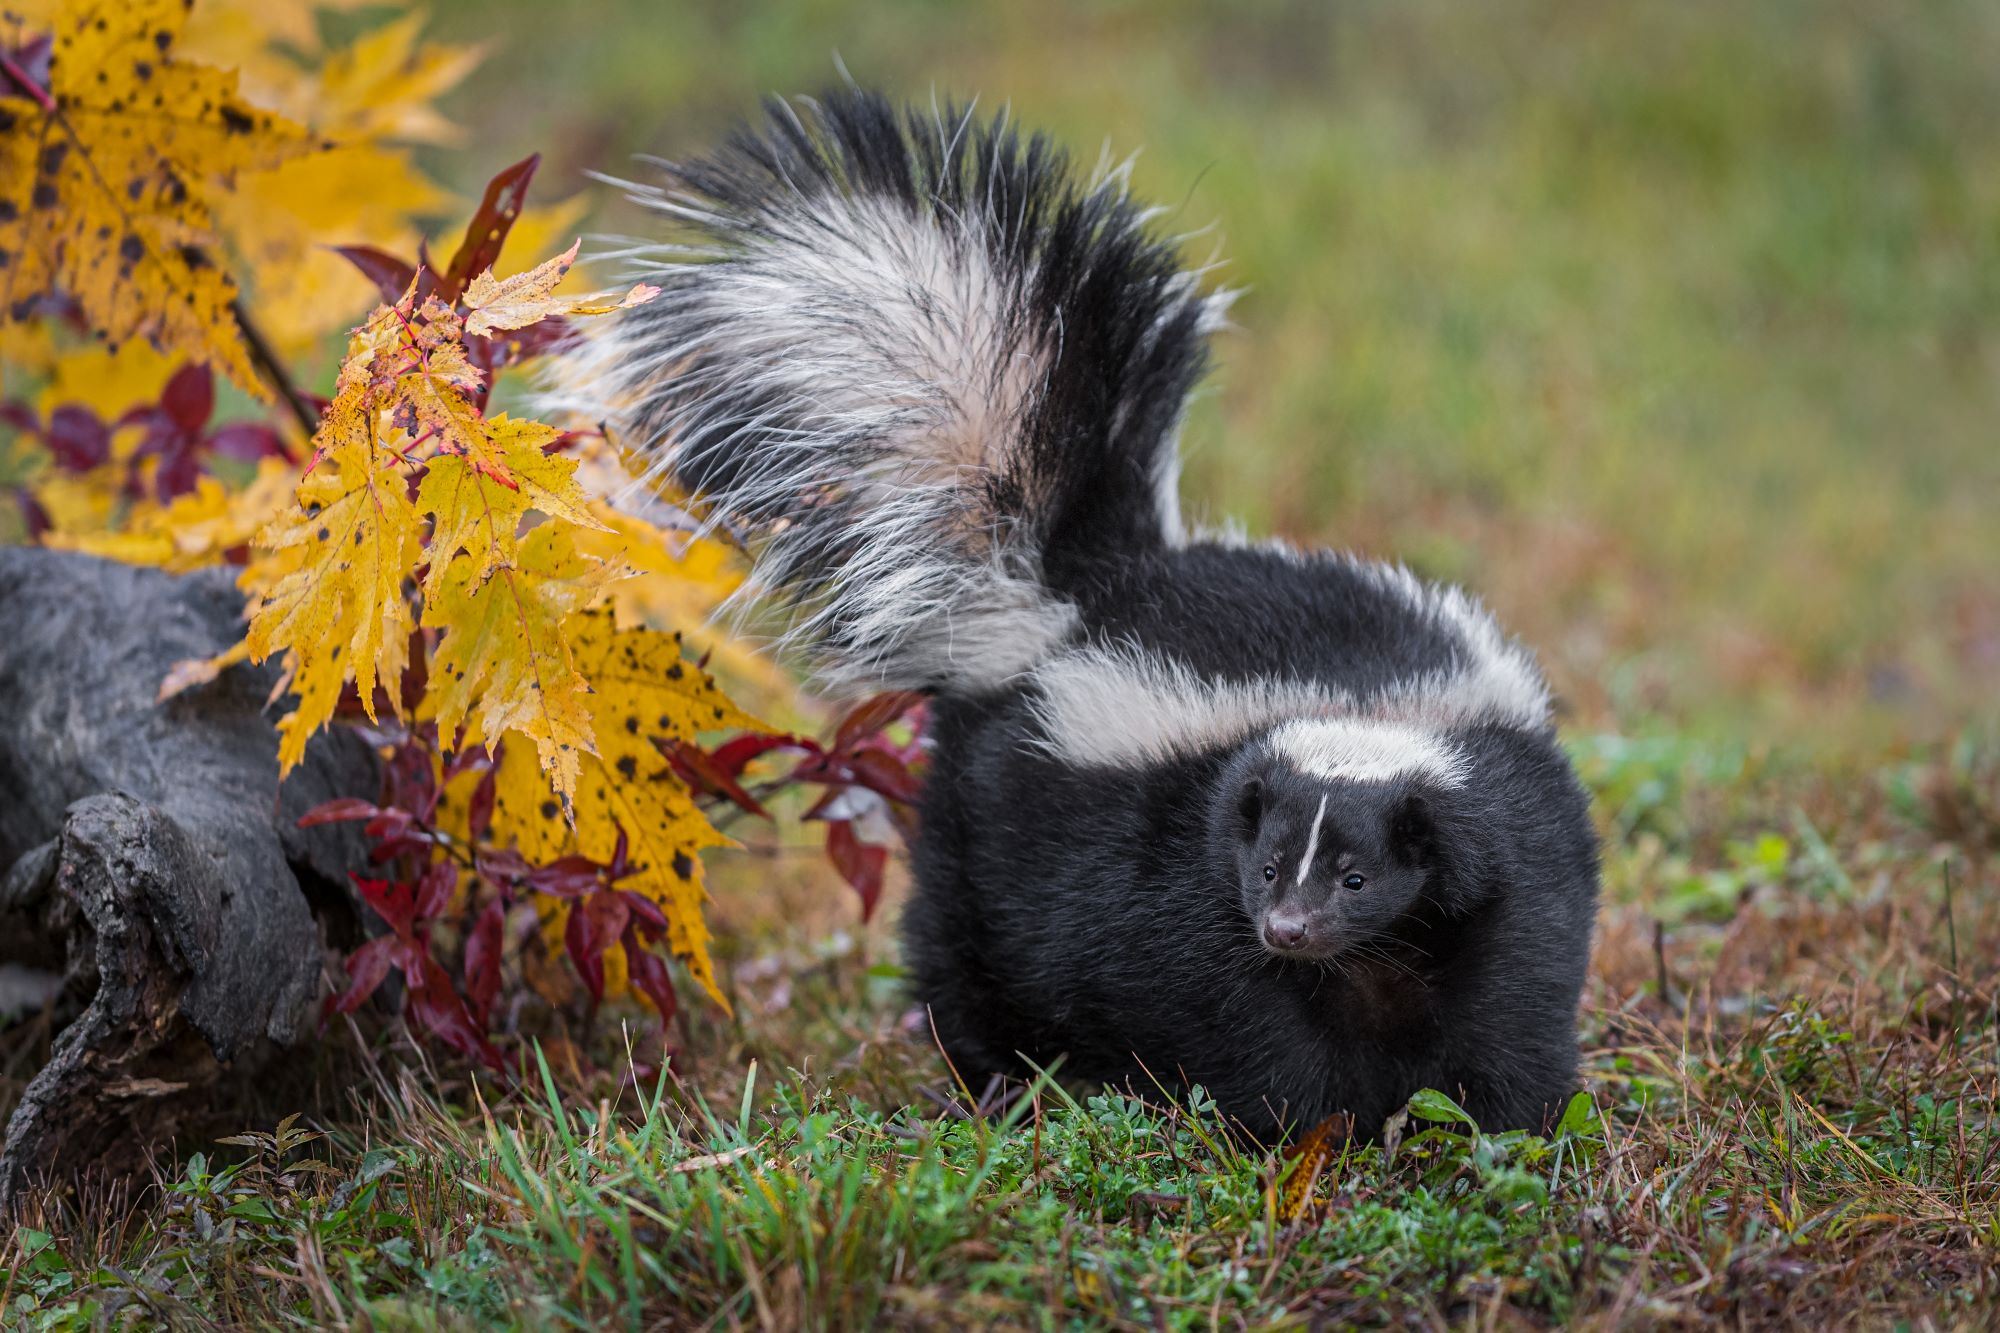 A striped skunk in autumn.